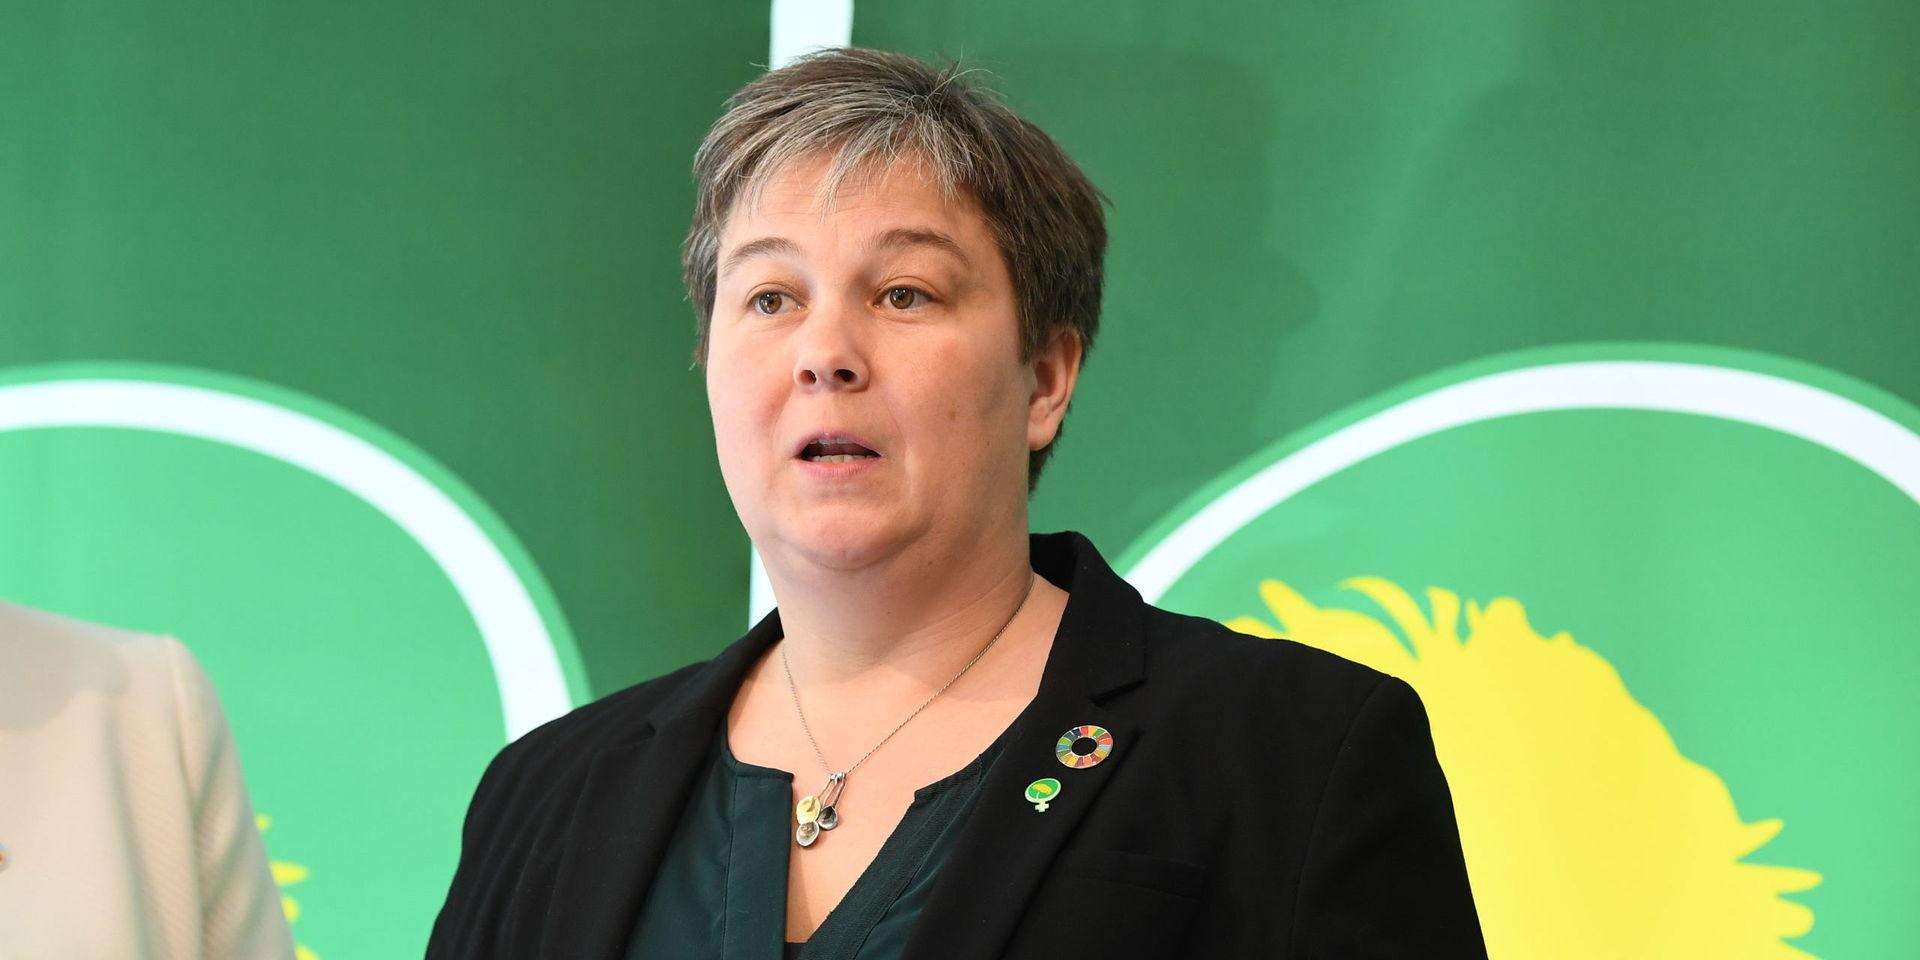 Miljöpartiets valberedning har förslagit  att Emma Nohrén tar över som partisekreterare efter Amanda Lind vid partiets kongress i maj. Men det finns fler som är intresserade av uppdraget.